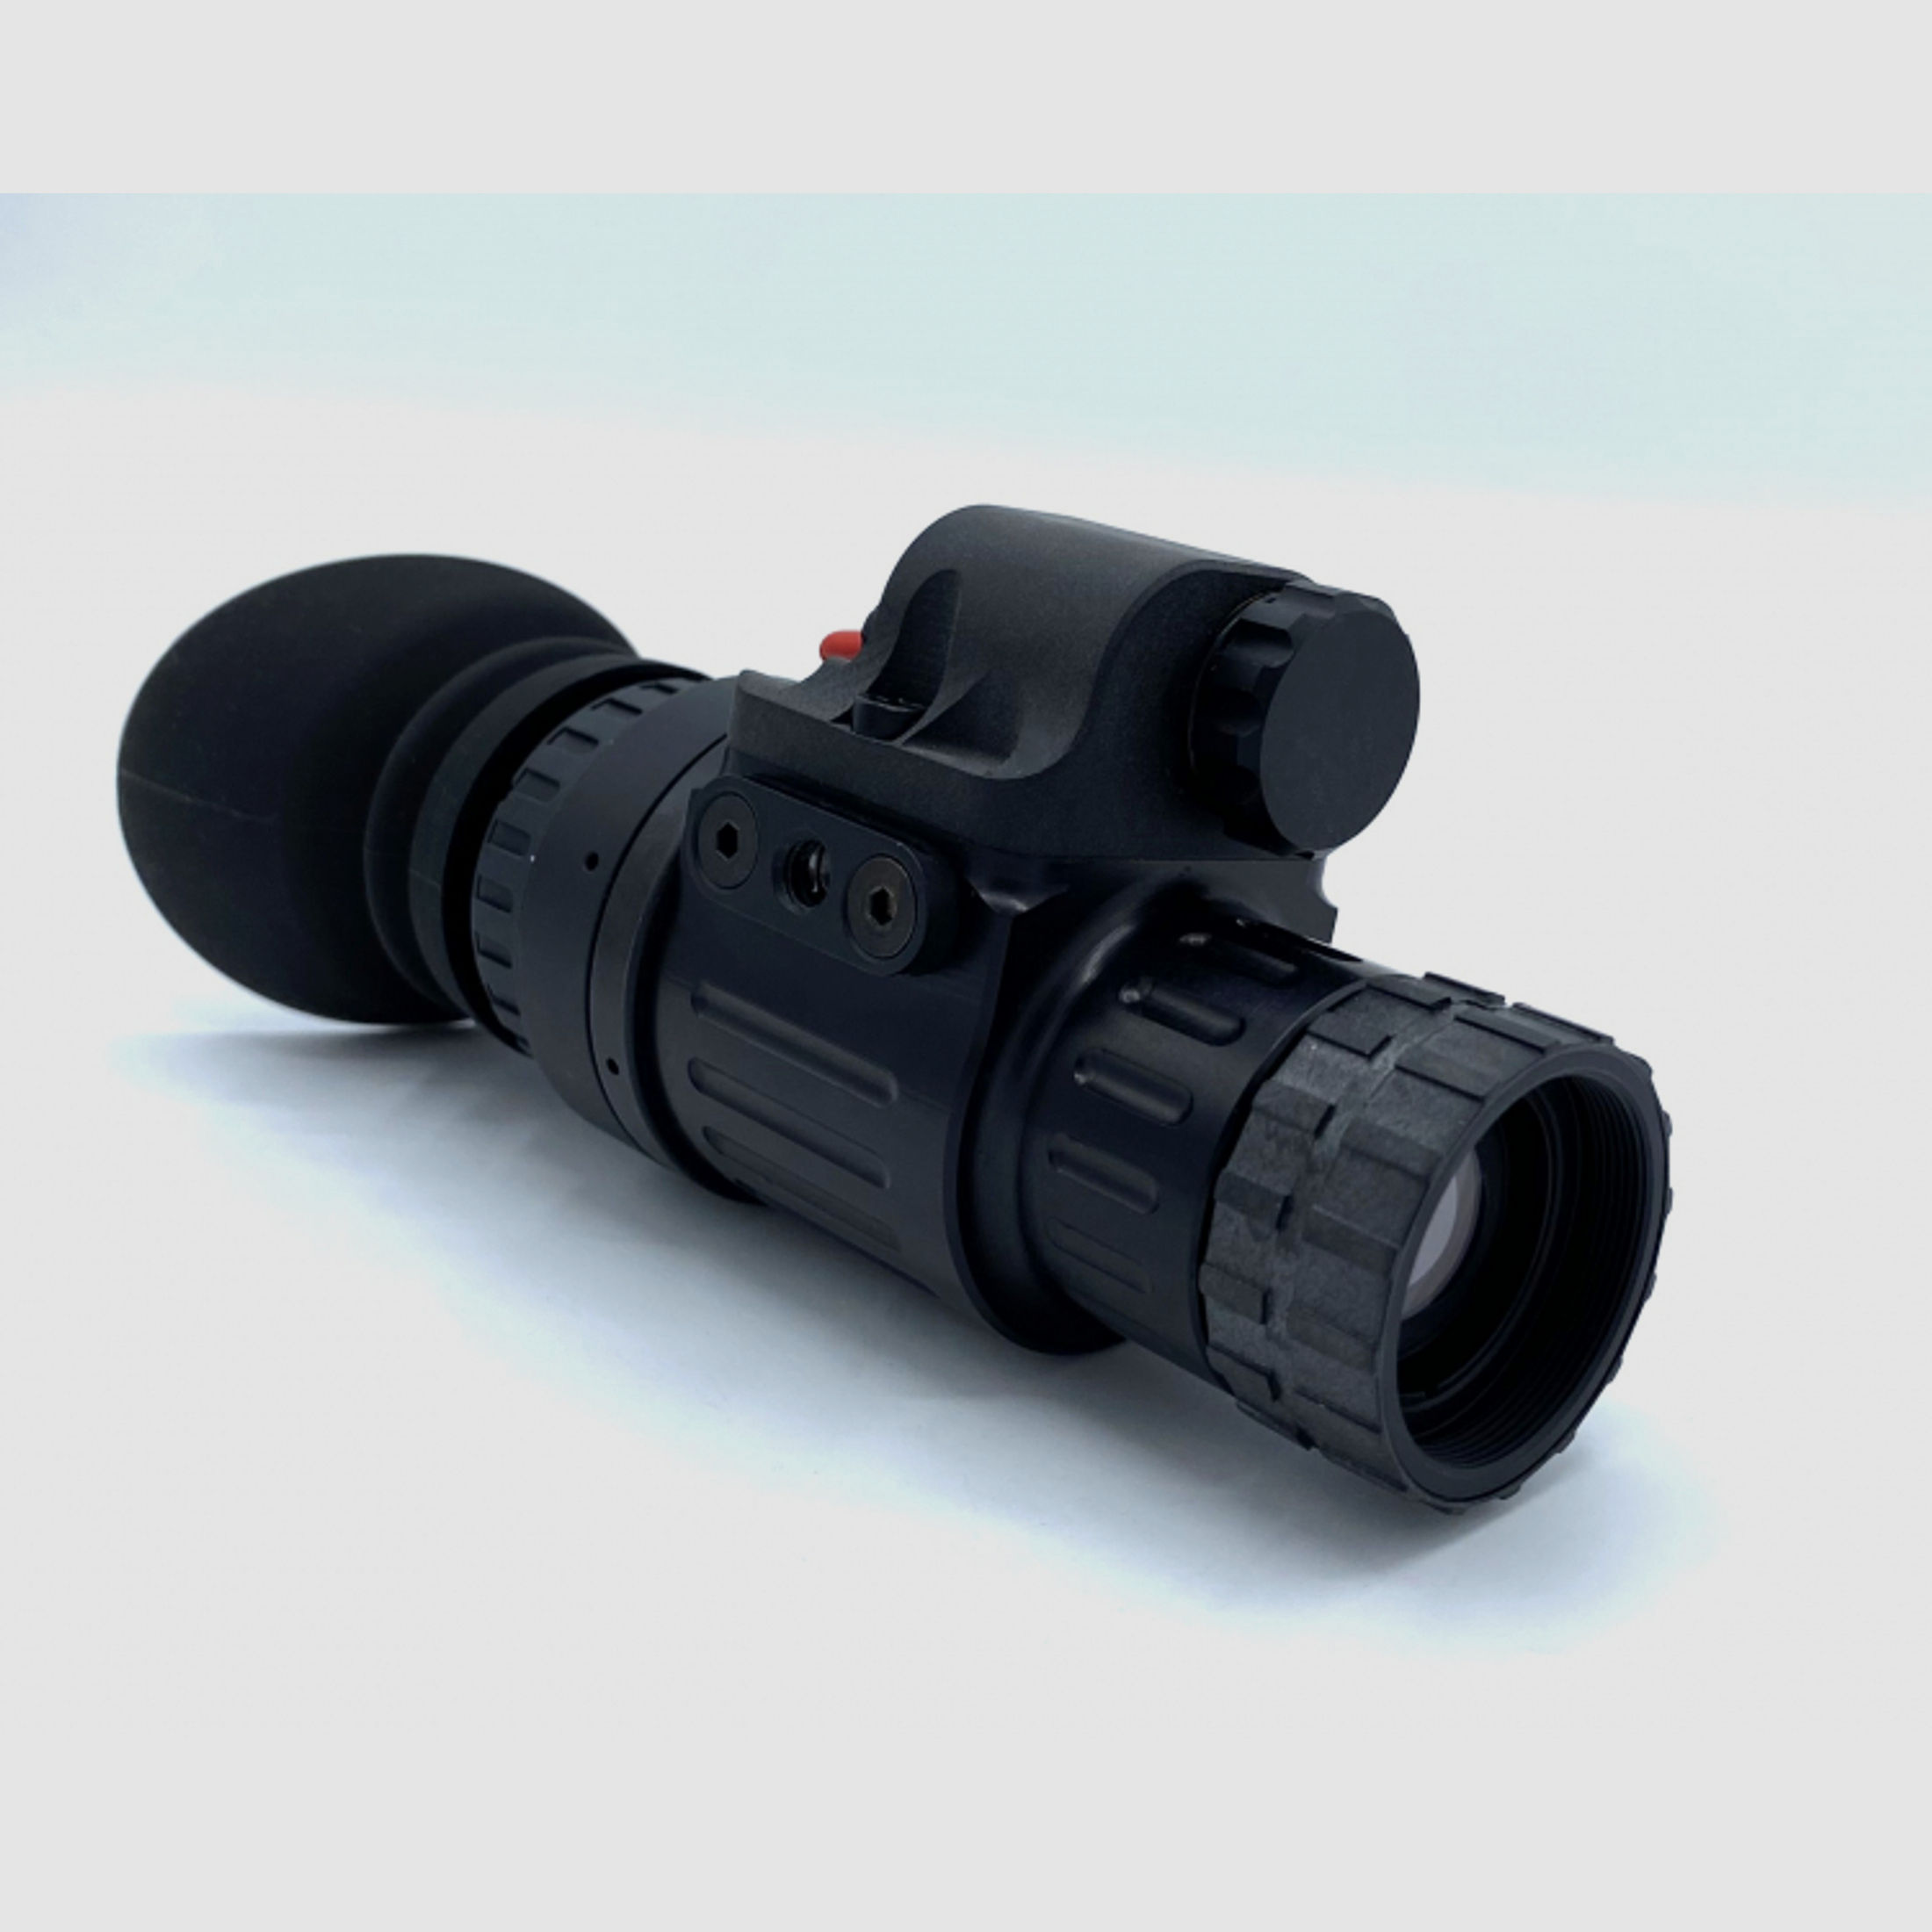 Nightspotter Nachtsichtgerät LUX-14, Photonis, green Gen 2+, für Jäger, Outdoor, Security